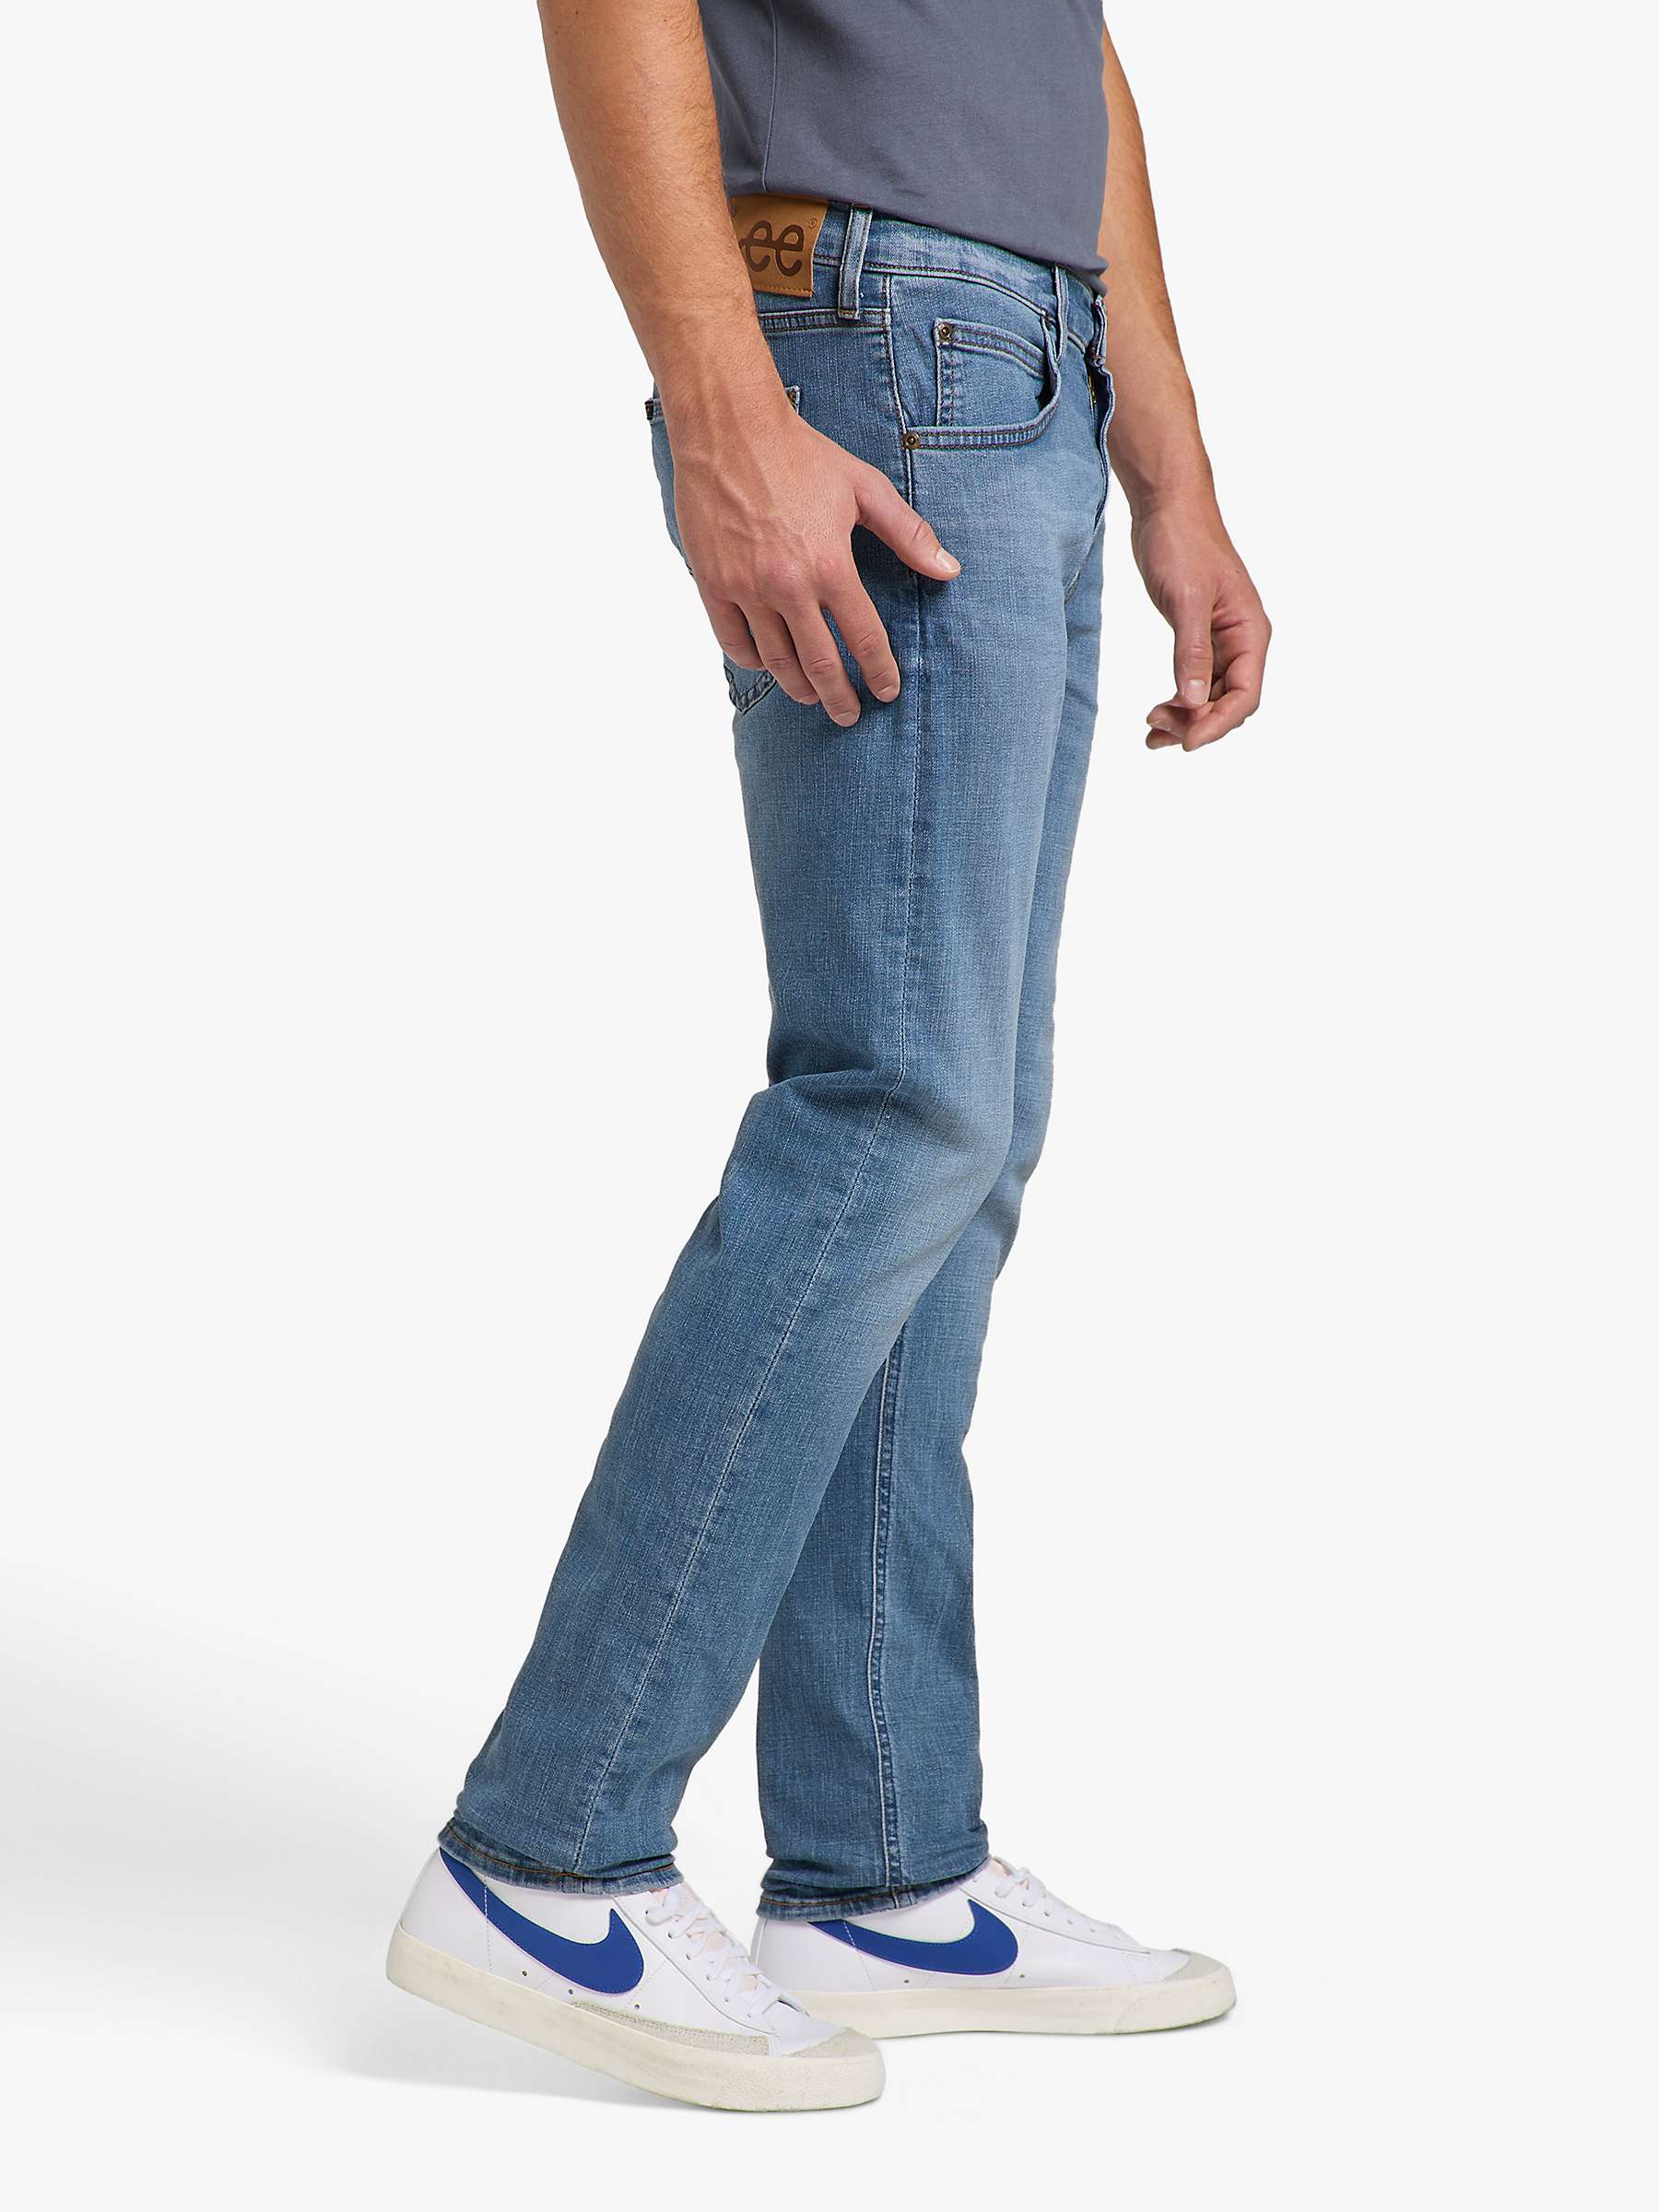 Buy Lee Cody Slim Denim Jeans, Blue Online at johnlewis.com